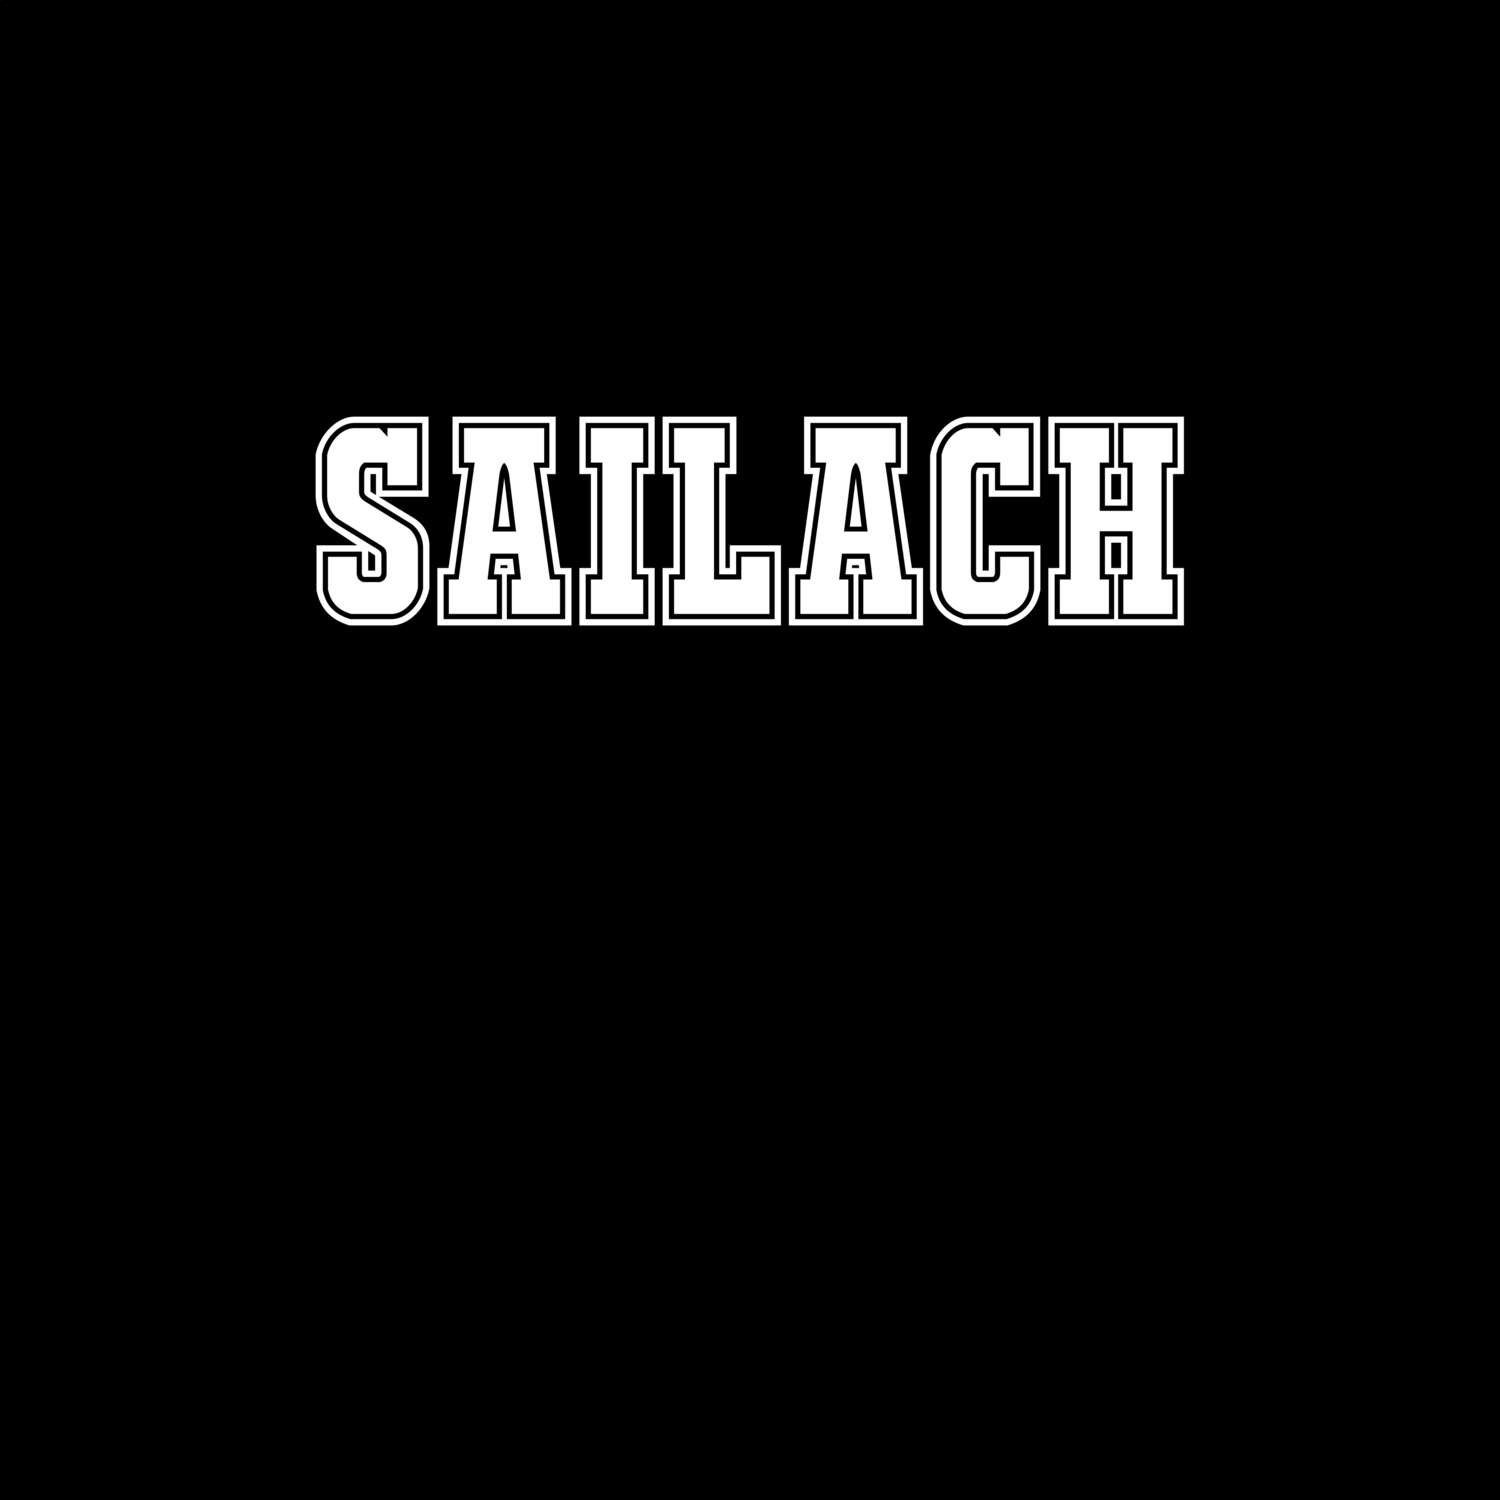 Sailach T-Shirt »Classic«